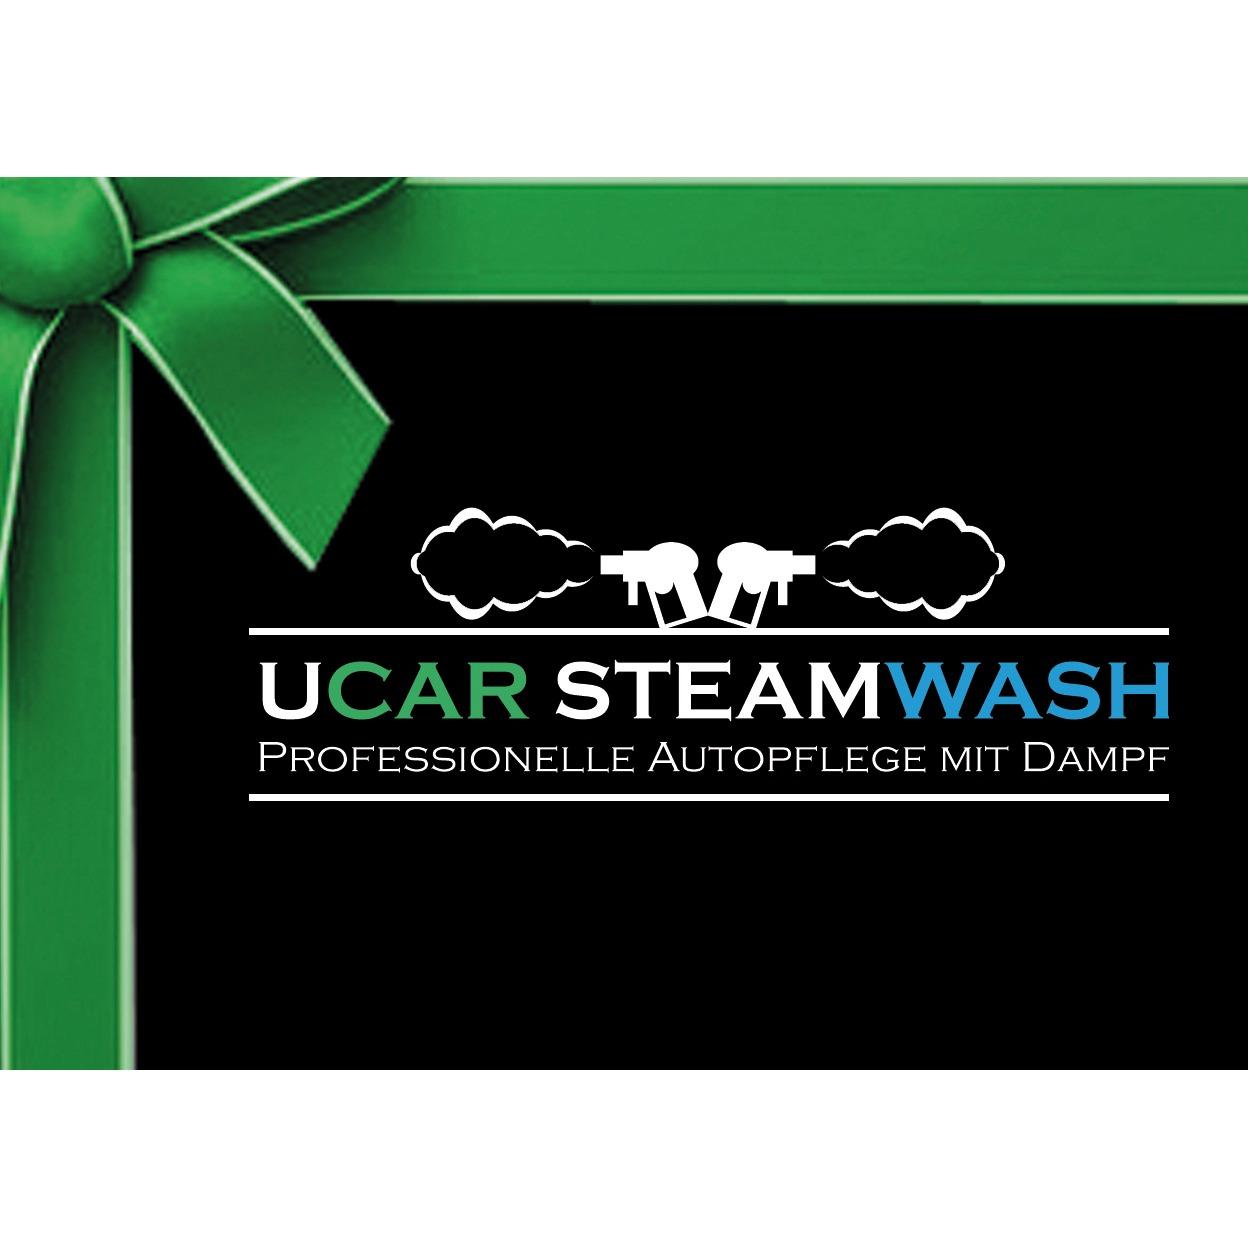 Ucar SteamWash - Autopflege Bonn - Keramikversiegelung - Lederreparatur in Bonn - Logo